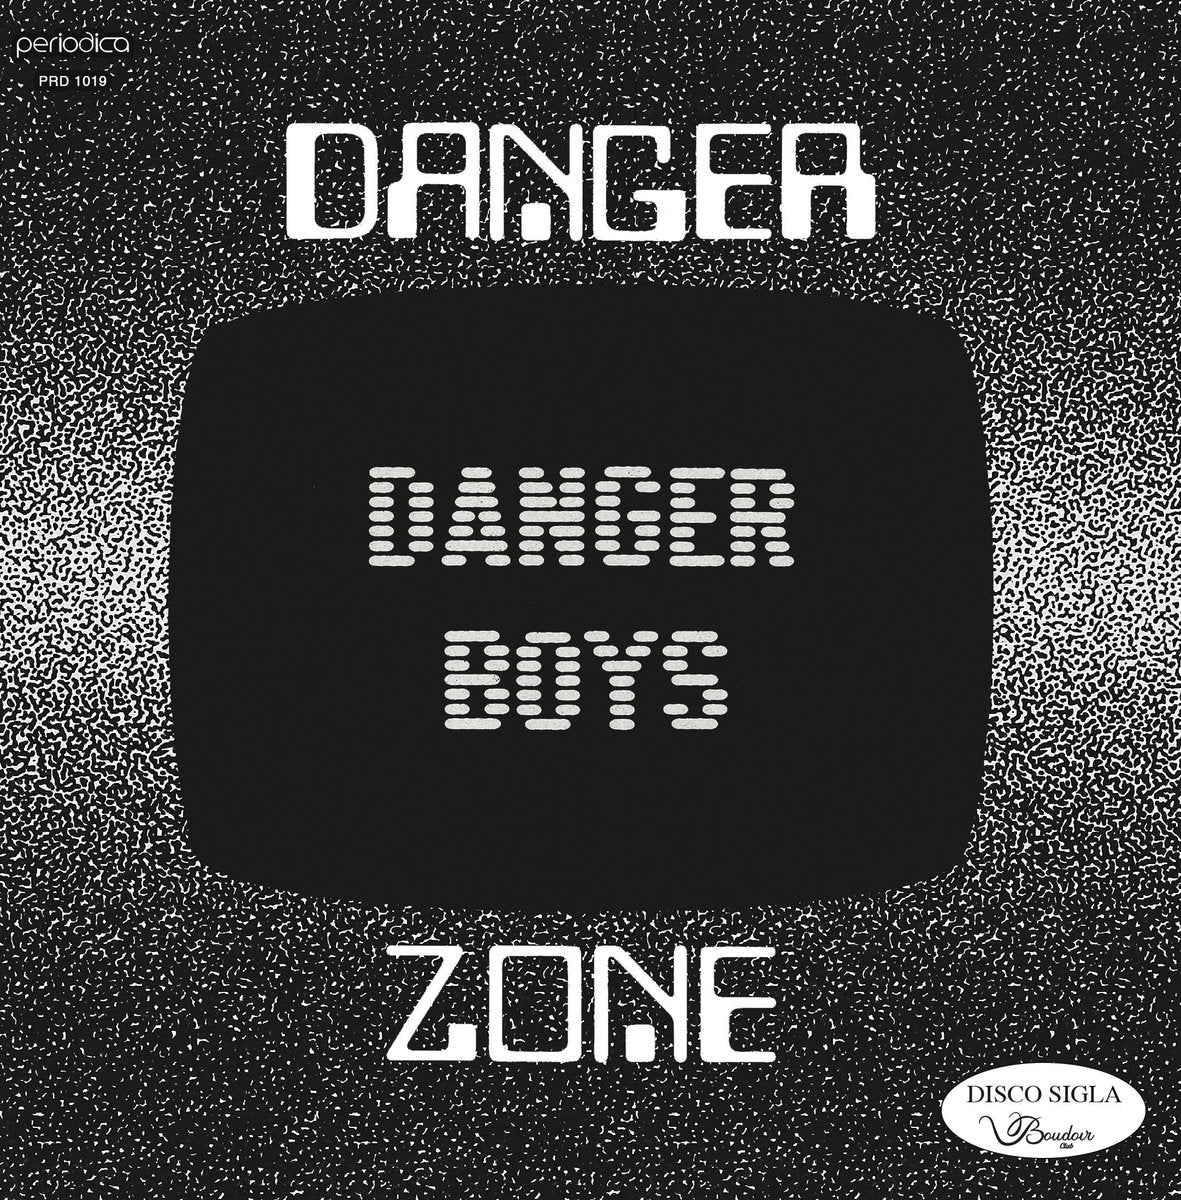 Danger Boys - Danger Zone